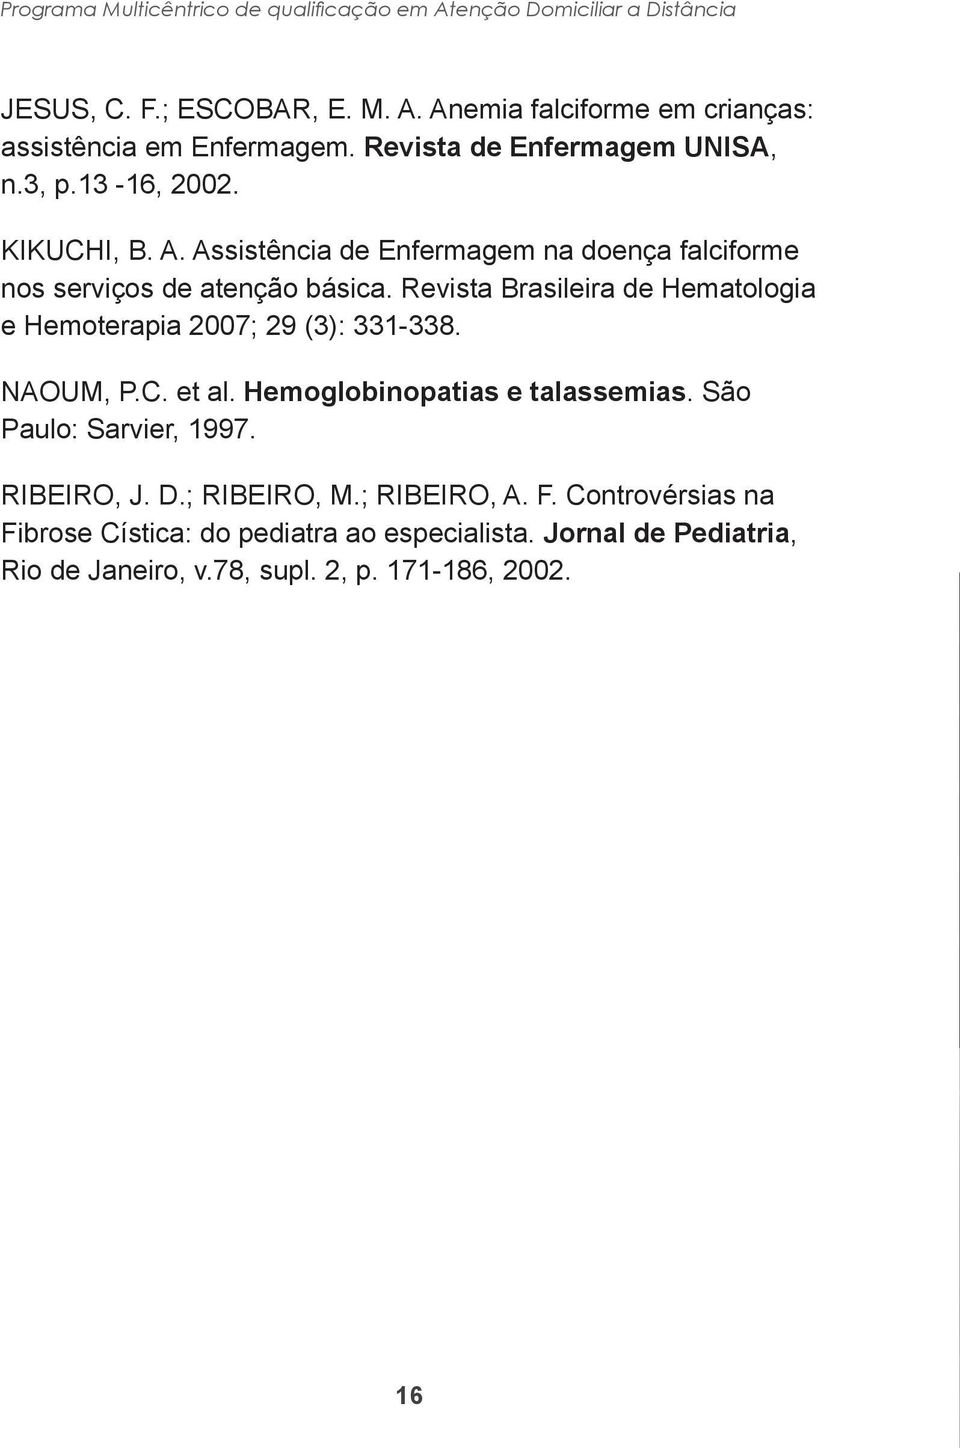 Revista Brasileira de Hematologia e Hemoterapia 2007; 29 (3): 331-338. NAOUM, P.C. et al. Hemoglobinopatias e talassemias. São Paulo: Sarvier, 1997.